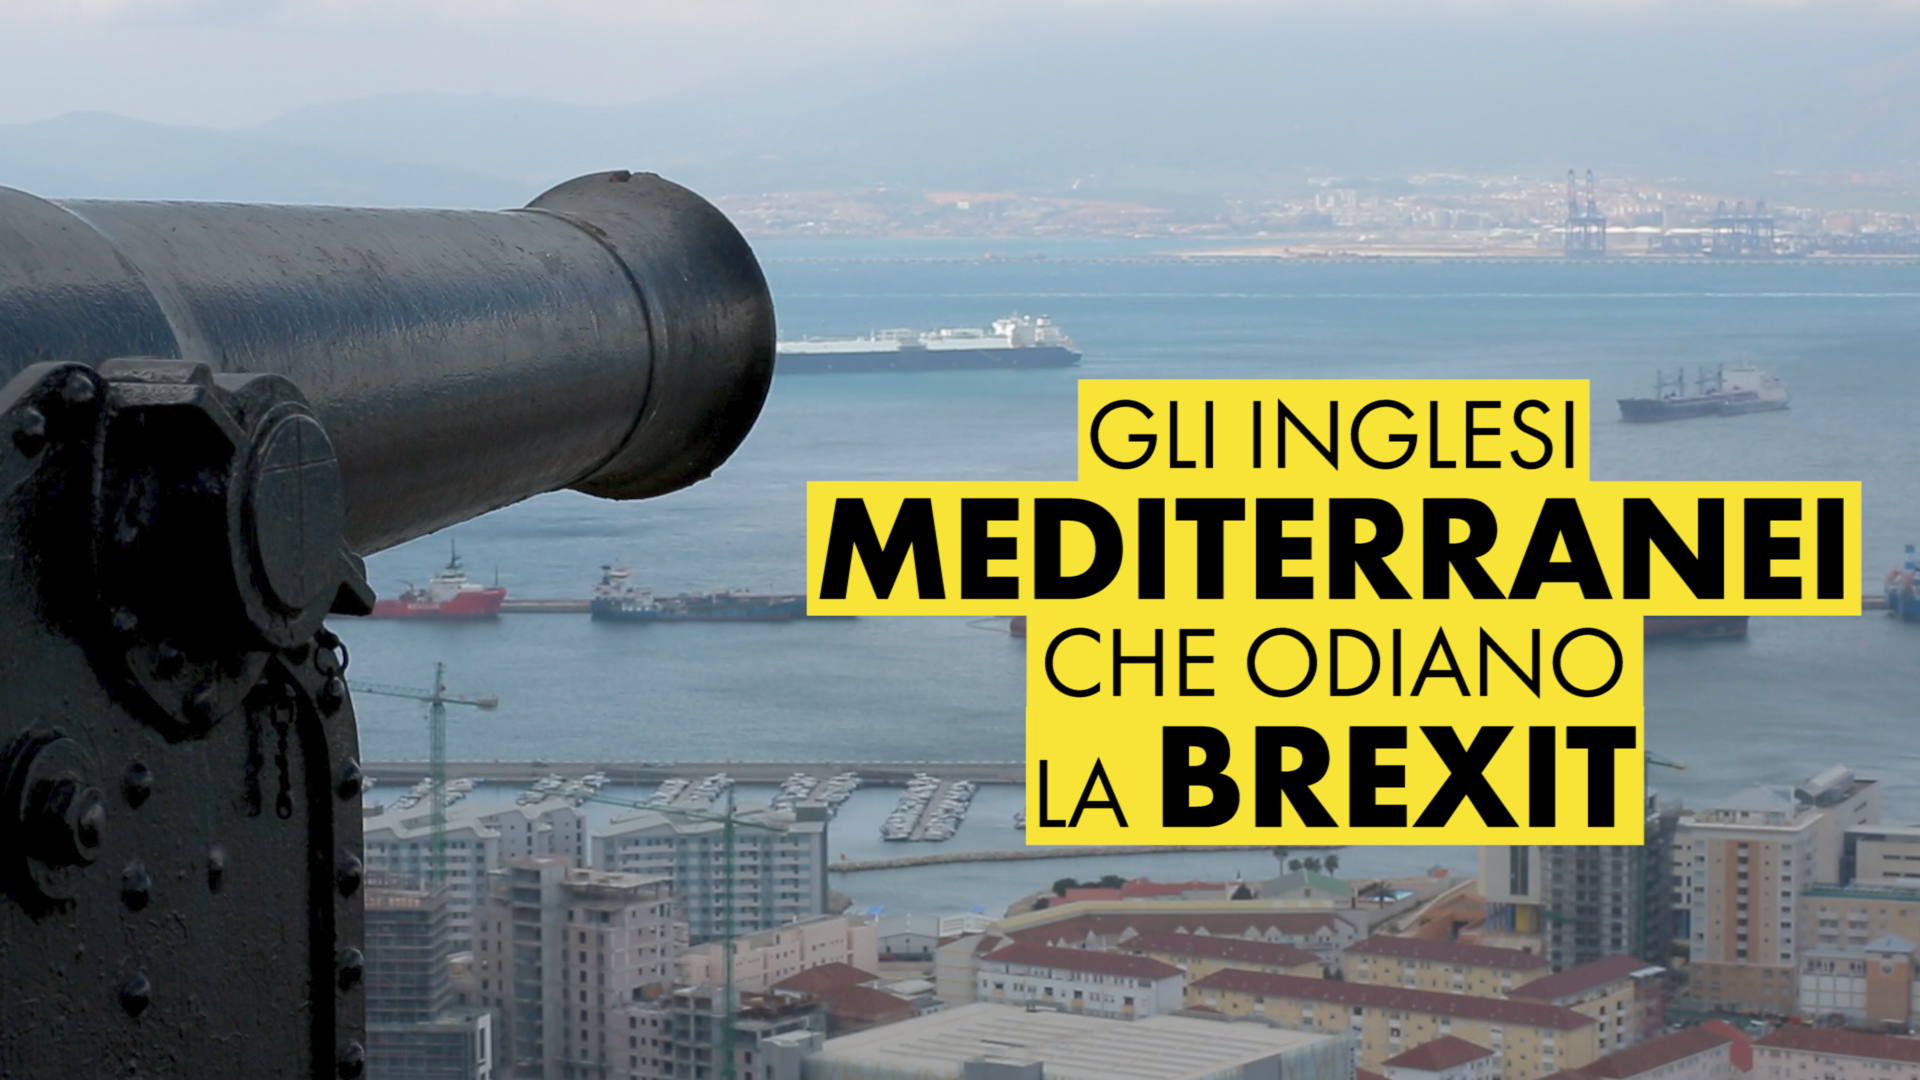 Gibilterra, qui la Brexit e' un macello